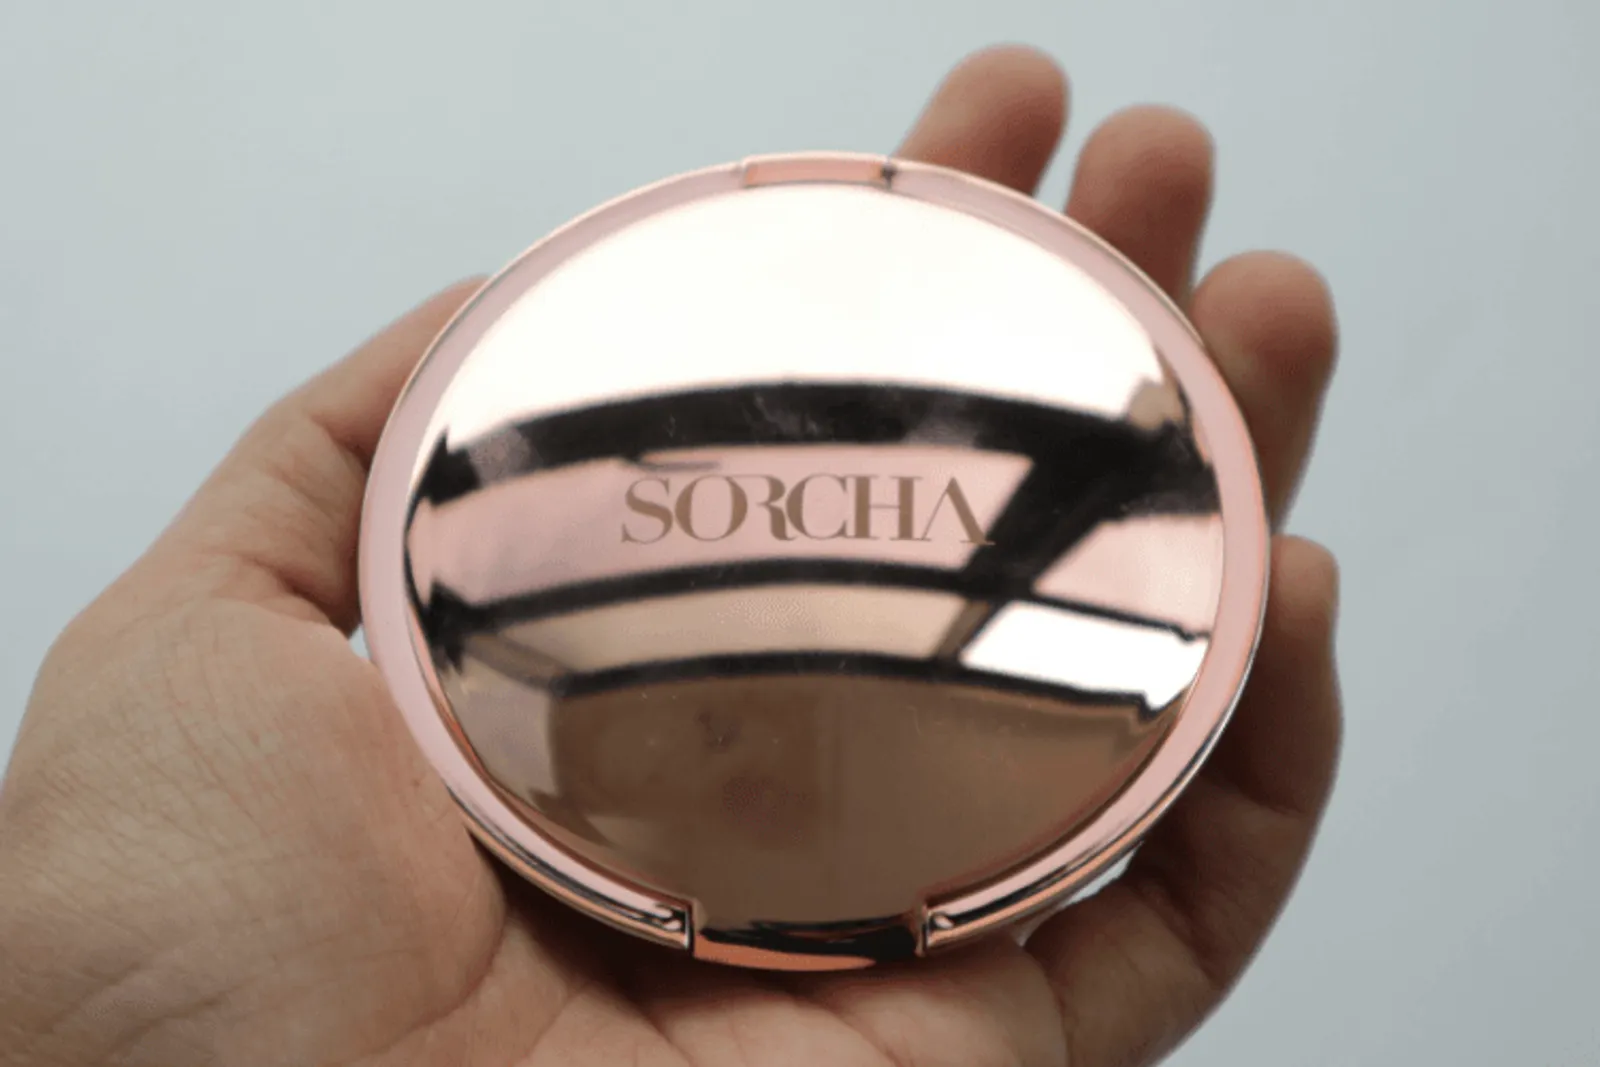 #Review: Memiliki 4 Warna Indah, Begini Highlighter dari Sorcha